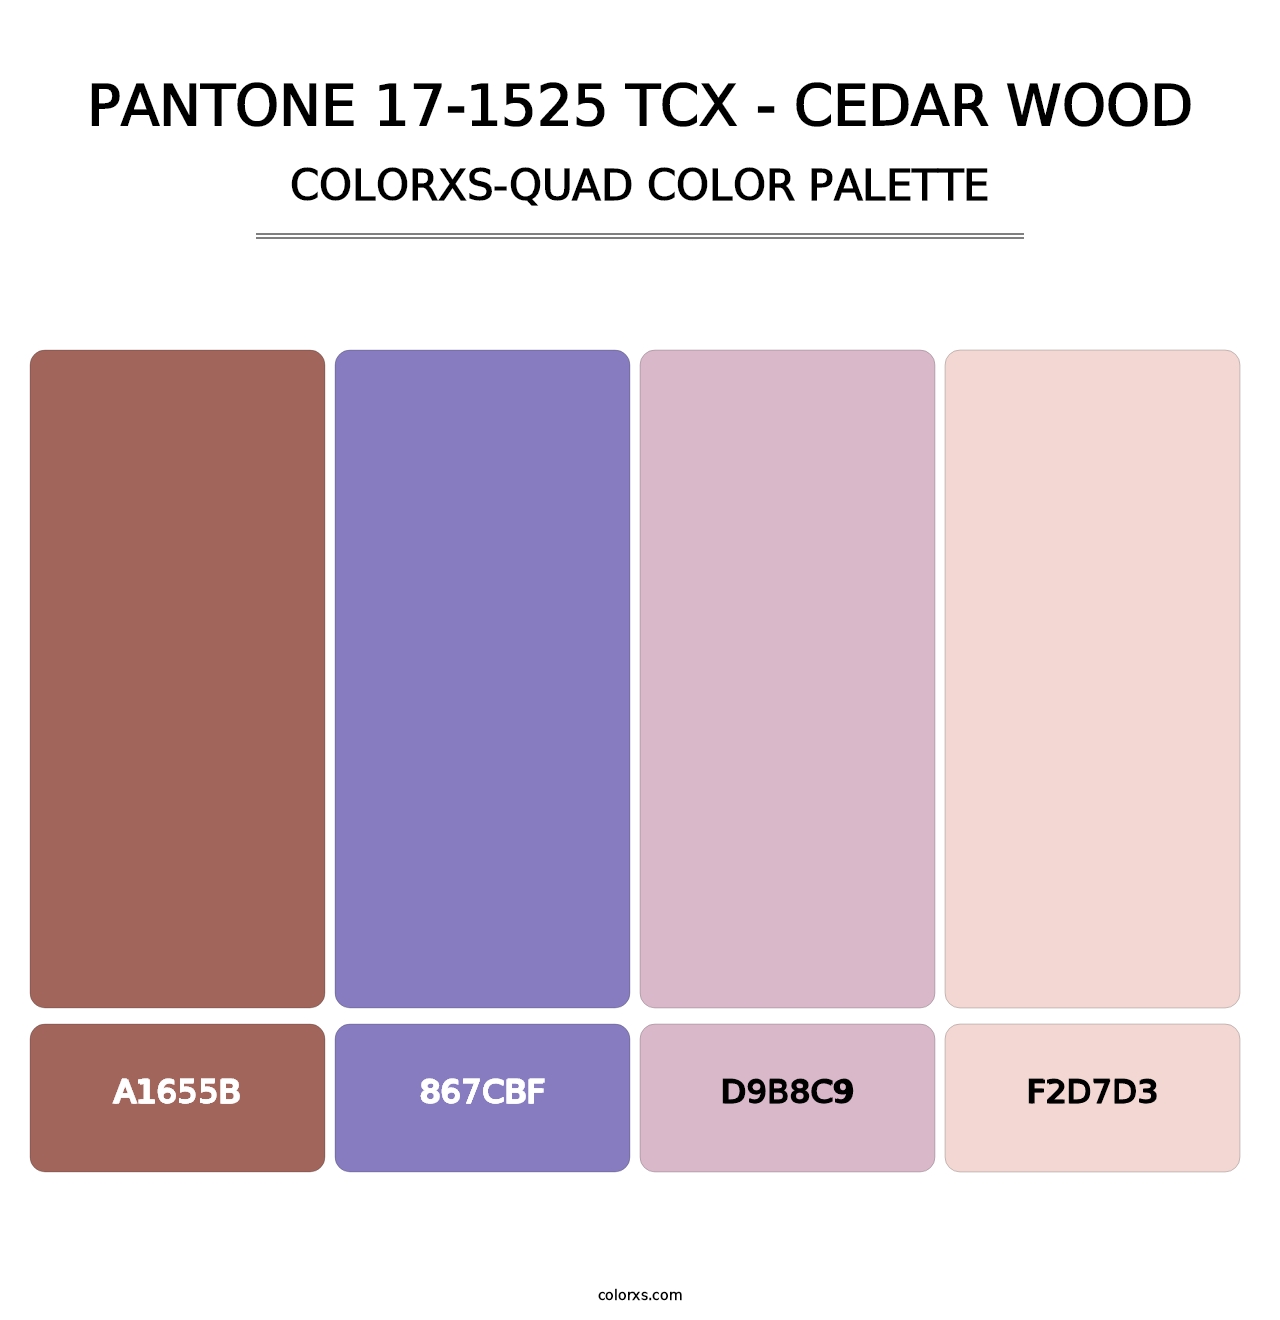 PANTONE 17-1525 TCX - Cedar Wood - Colorxs Quad Palette